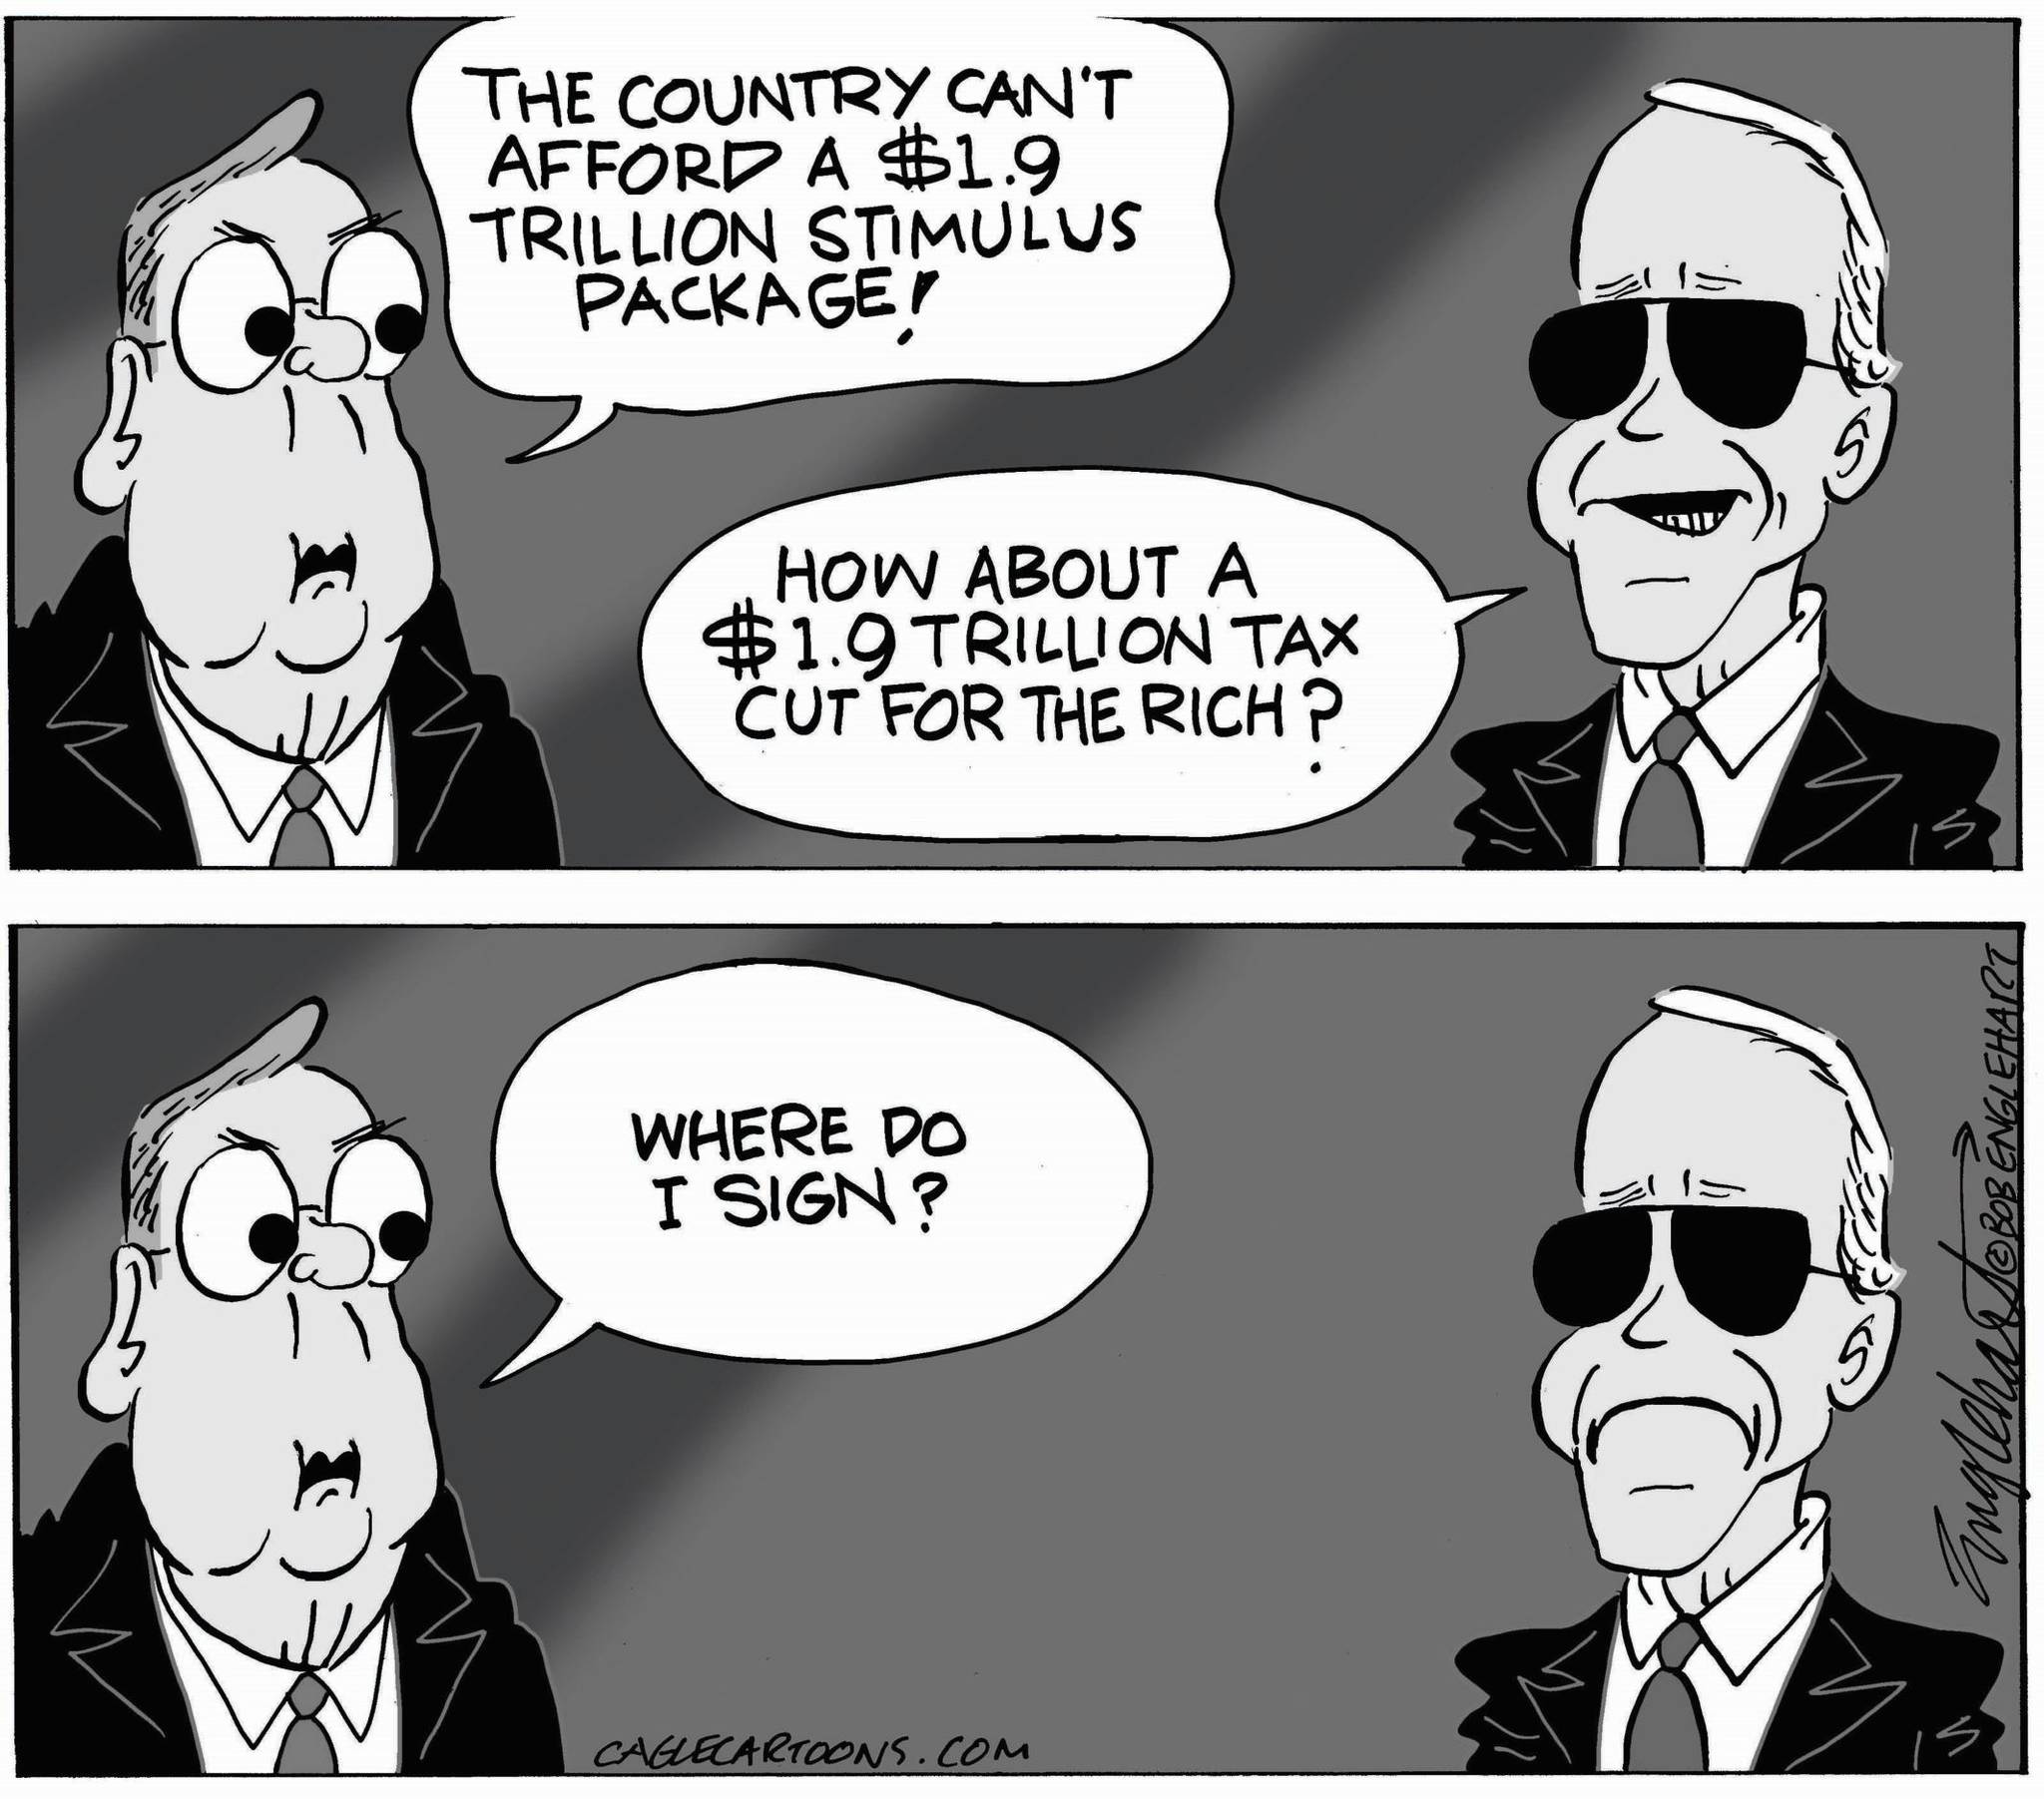 Bob Englehart, PoliticalCartoons.com